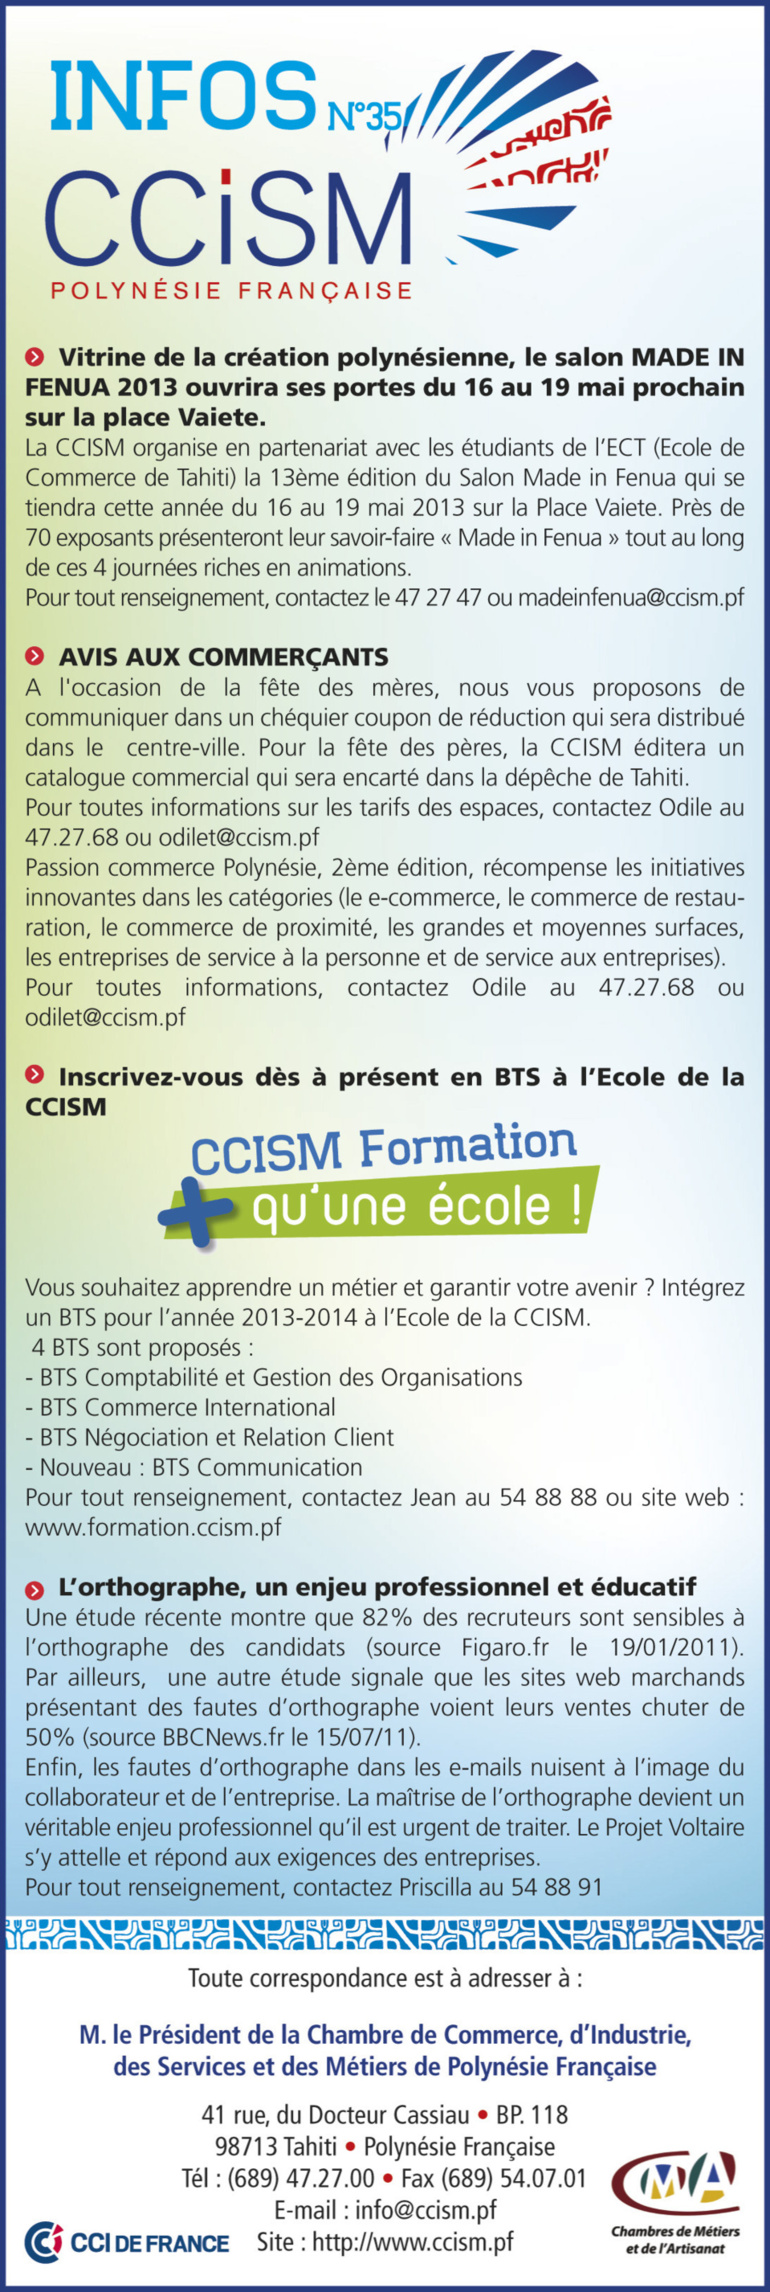 Infos CCISM N°35